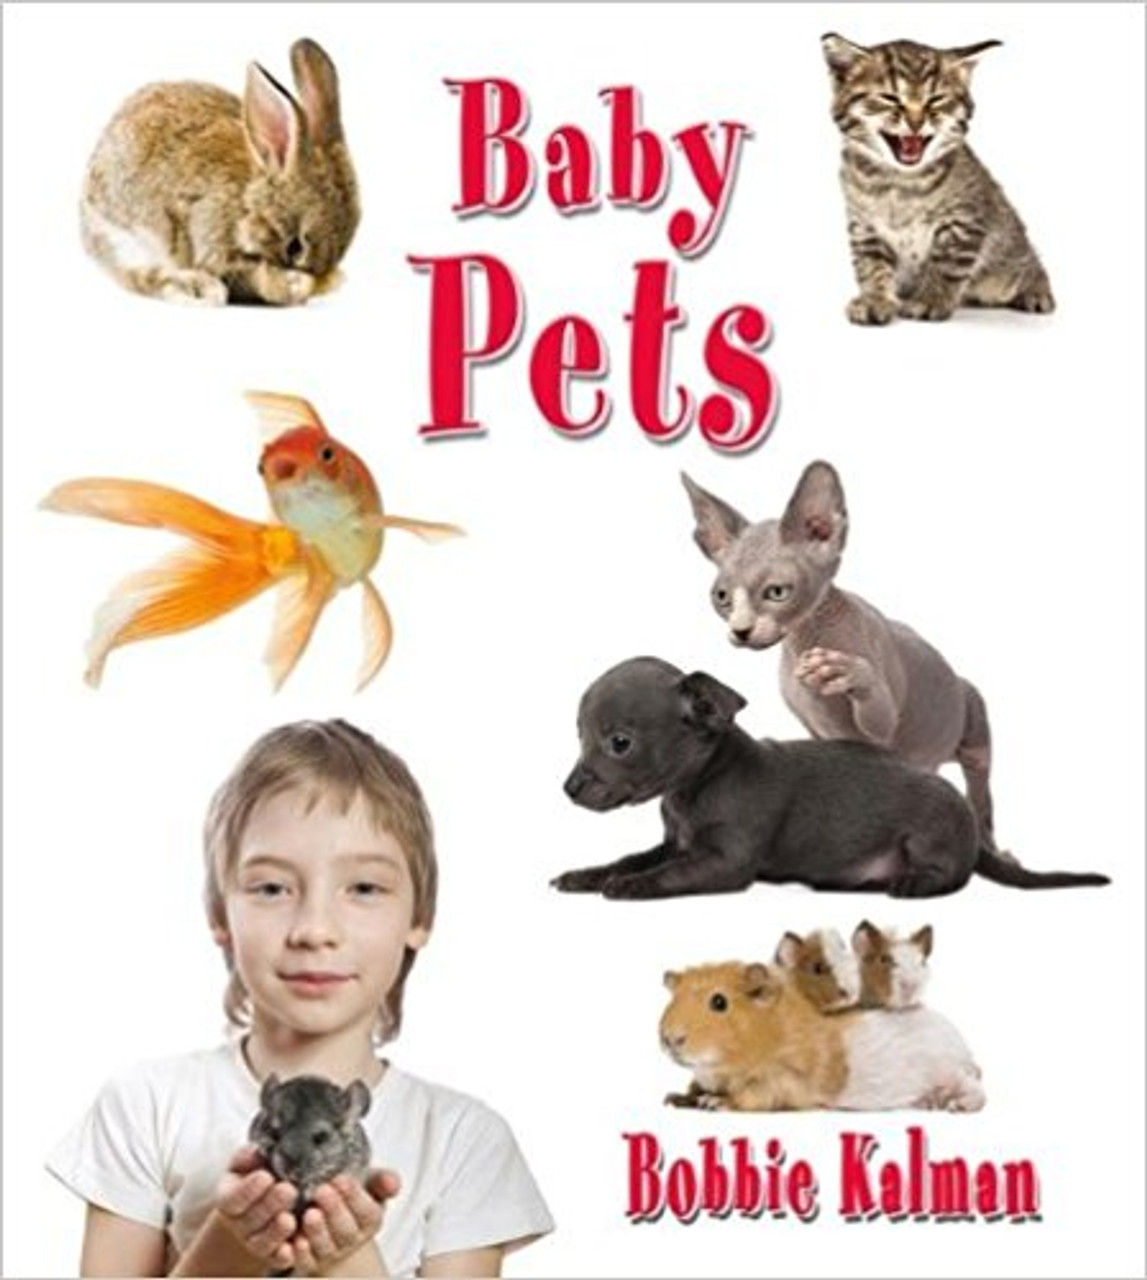 Baby pets (Paperback) by Bobbie Kalman